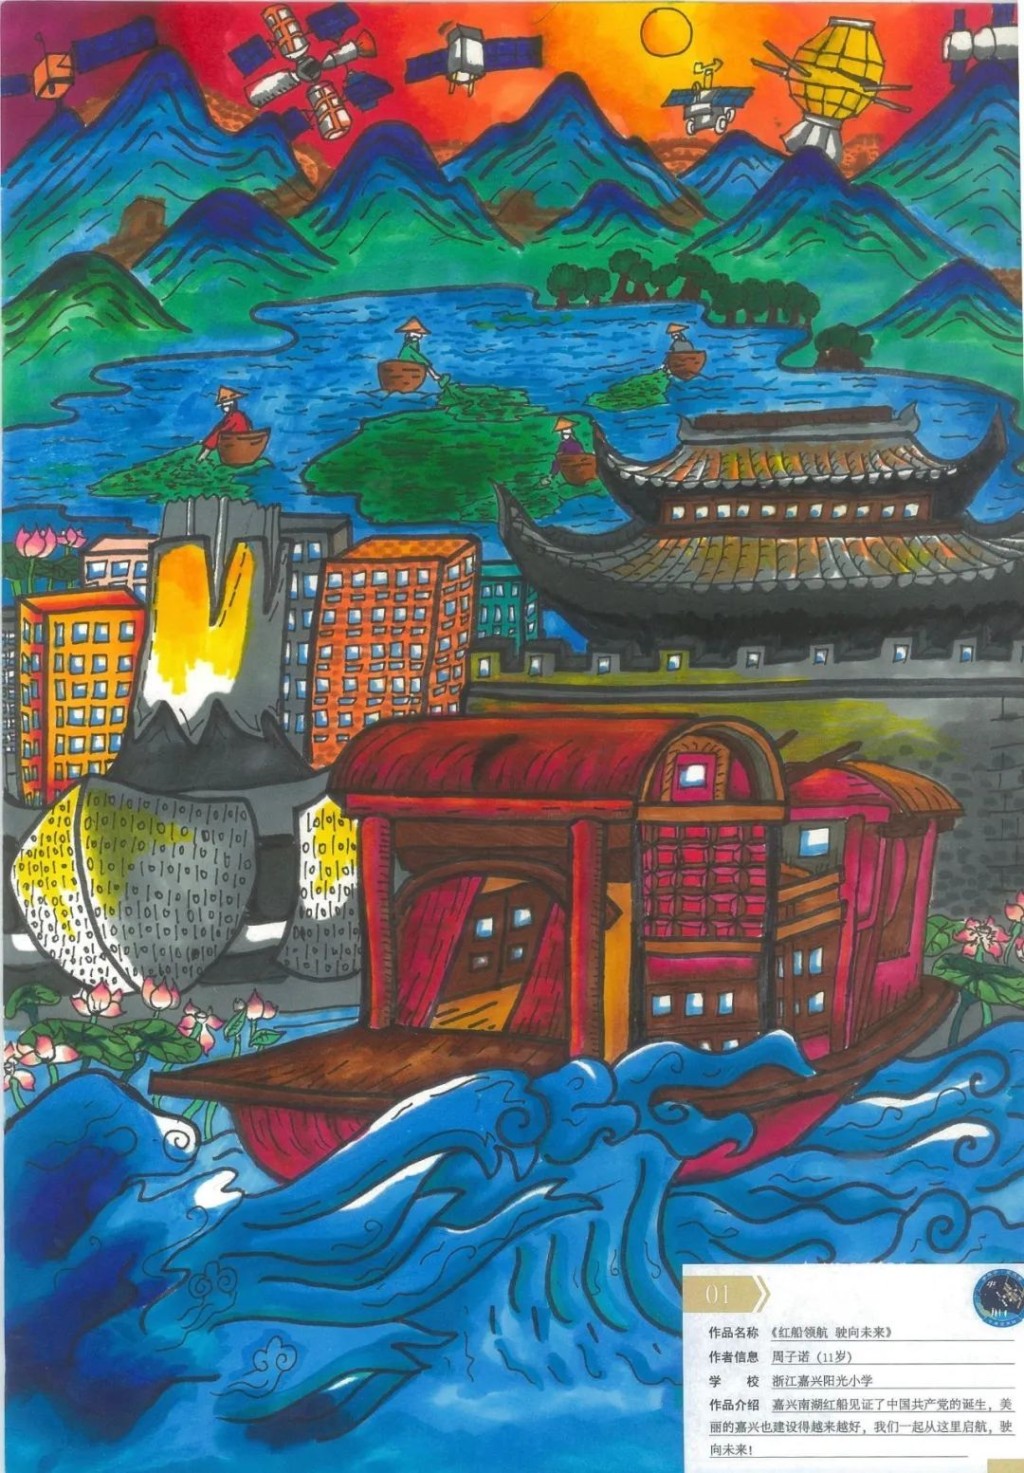 來自浙江周子諾的作品《紅船領航 駛向未來》